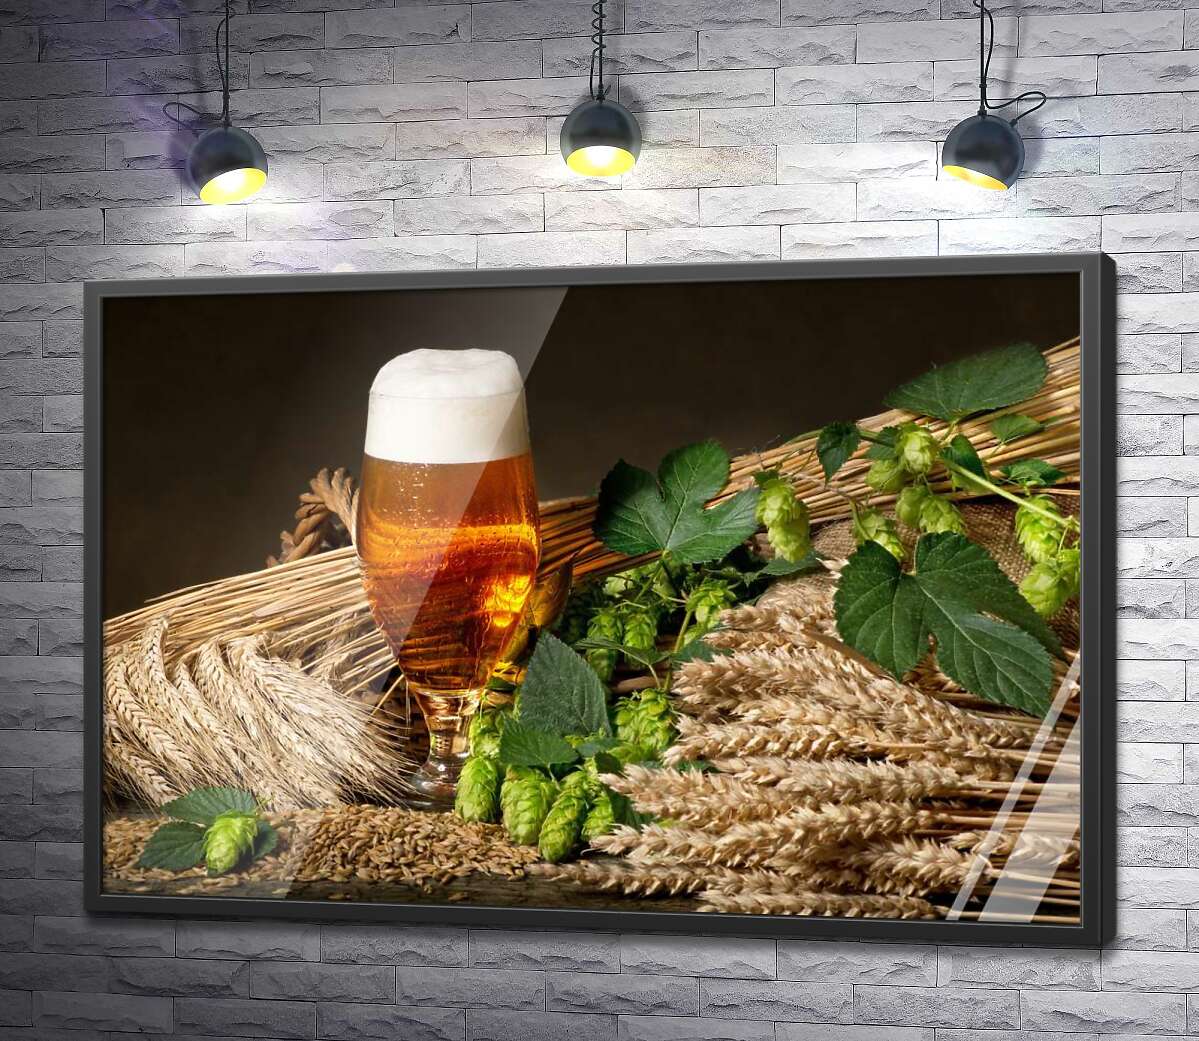 постер Стакан янтарного пива среди снопов пшеницы, ячменя и зеленых головок хмеля